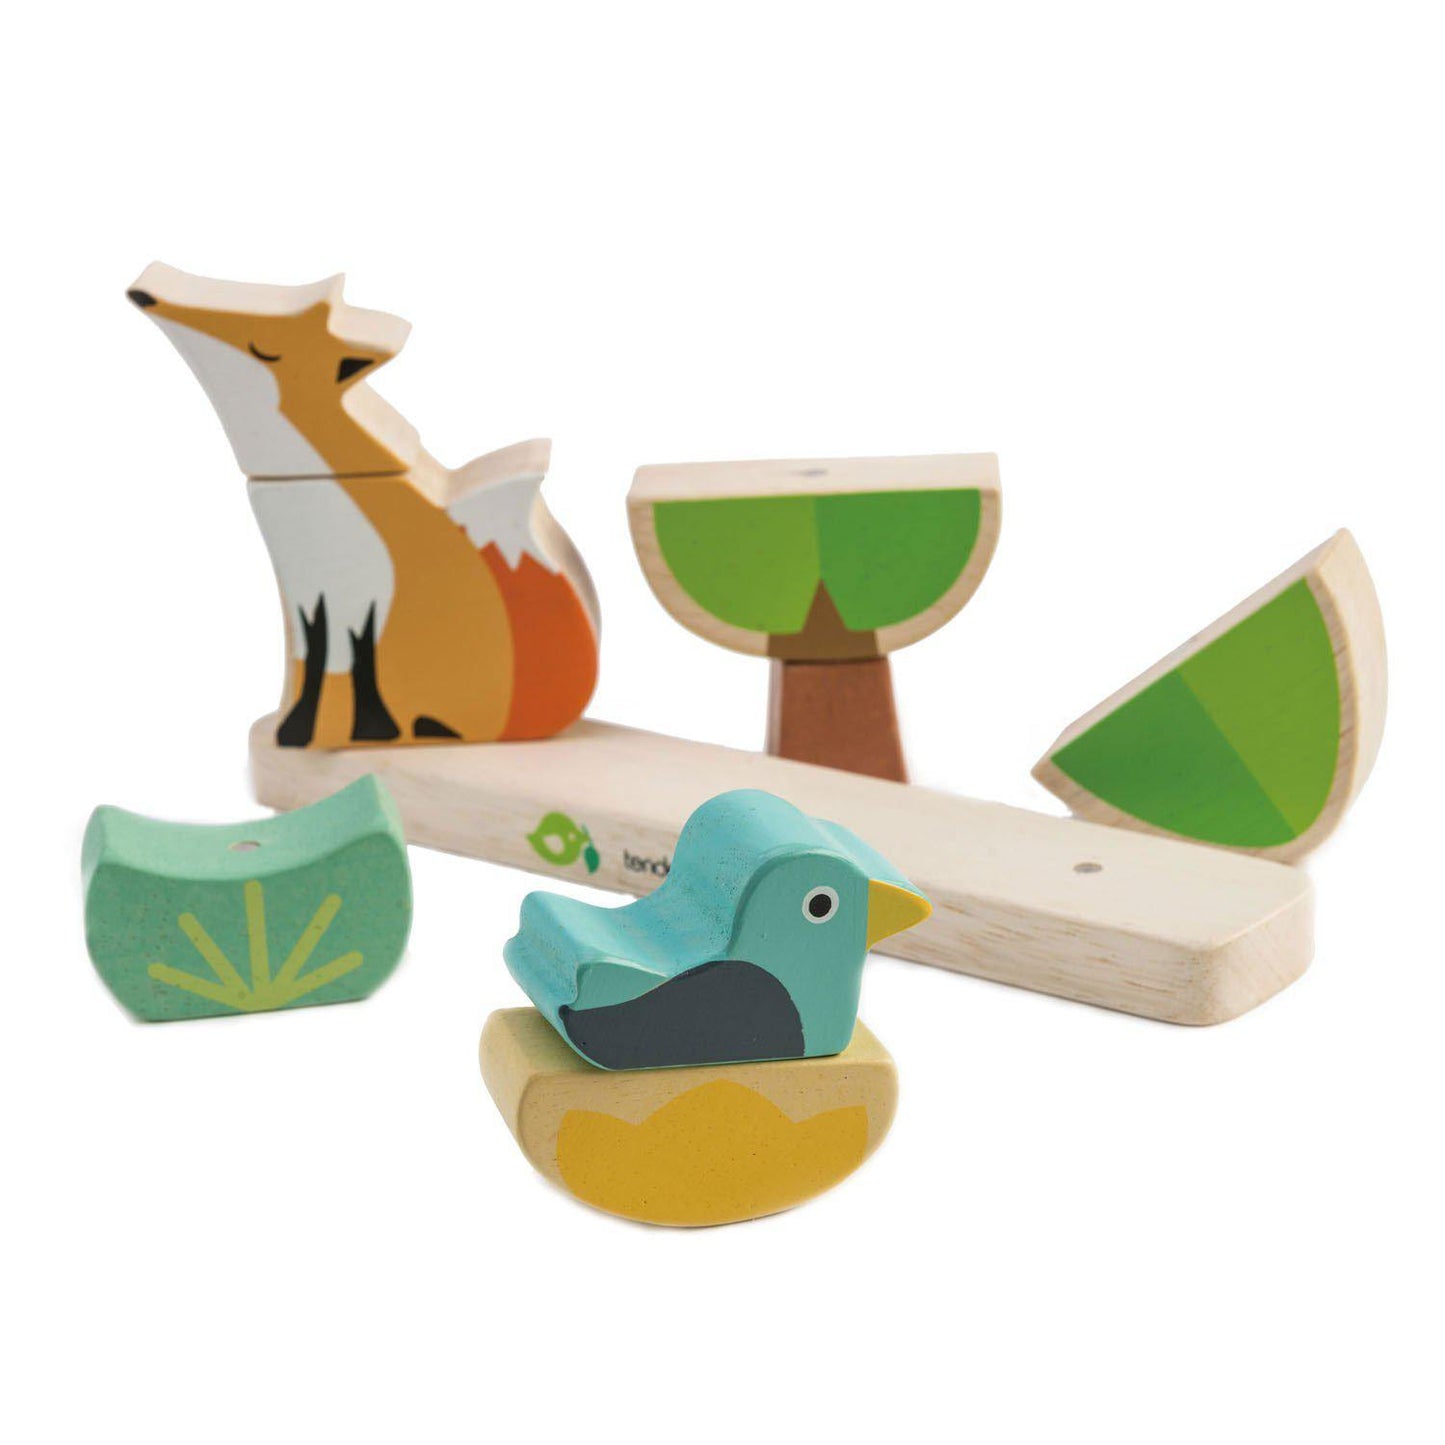 Erdei róka mágneses oktató puzzle, prémium minőségű fából - Foxy Magnetic Stacker - 8 darab - Tender Leaf Toys-Tender Leaf Toys-3-Játszma.ro - A maradandó élmények boltja